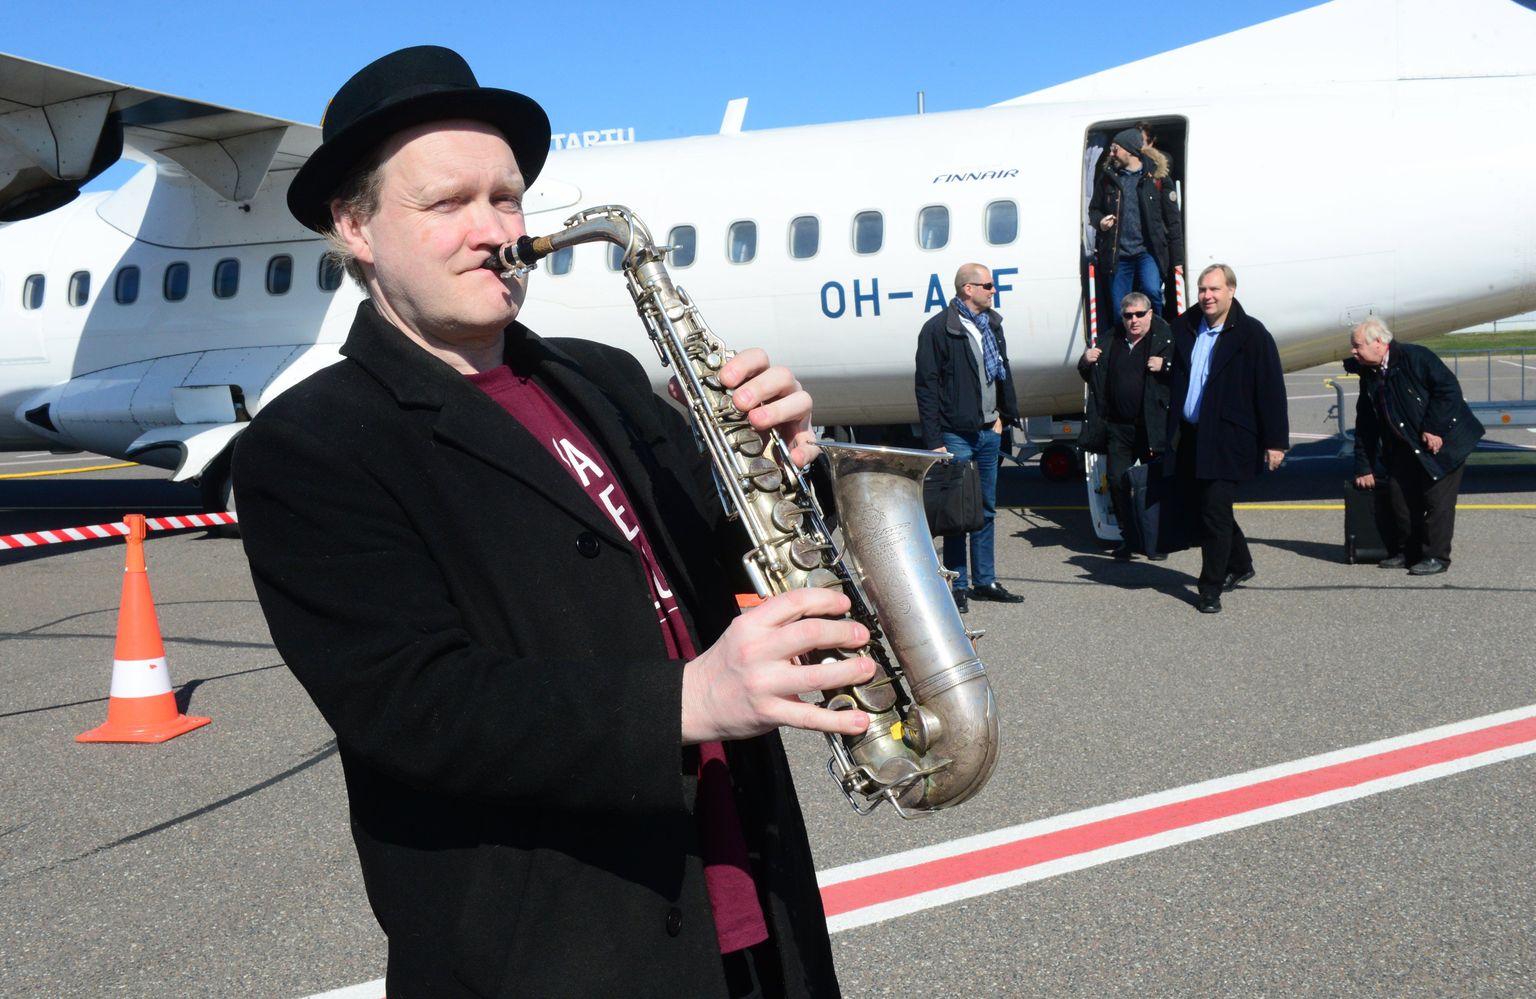 Eile kell 11.45 Tartu lennuväljal maandunud lennukist astus teiste reisijate hulgas välja Finnairi pilootide orkester. Dirigent Martti Peippo võttis sealsamas vastutulijate tervitamiseks pillikastist välja saksofoni.